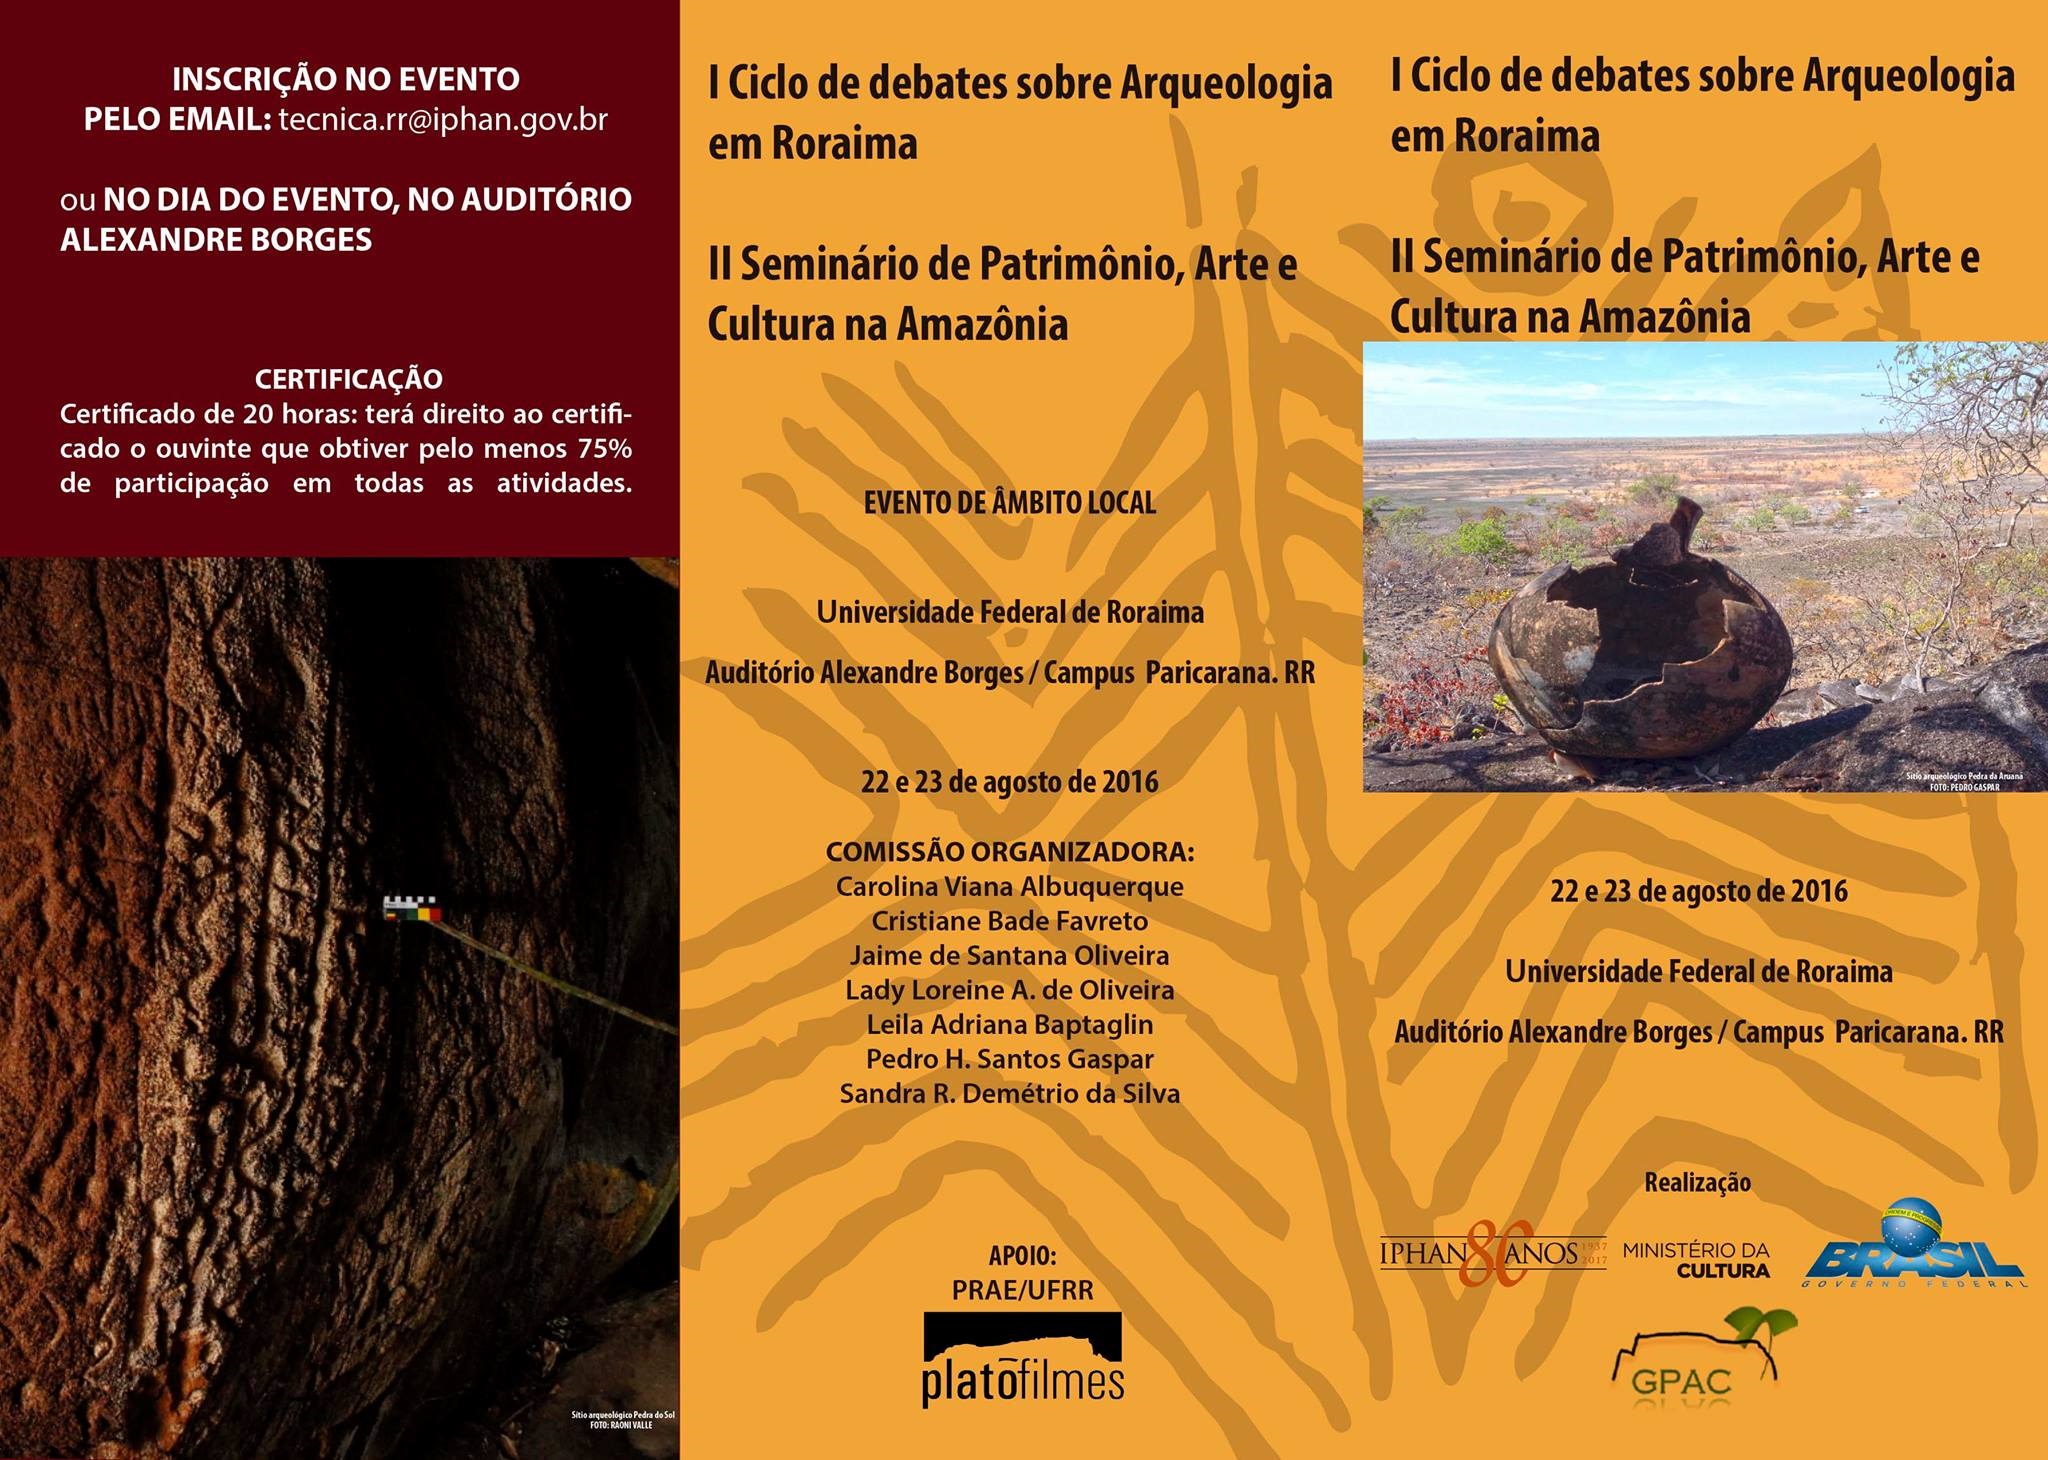 I Ciclo de Debates sobre Arqueologia em Roraima